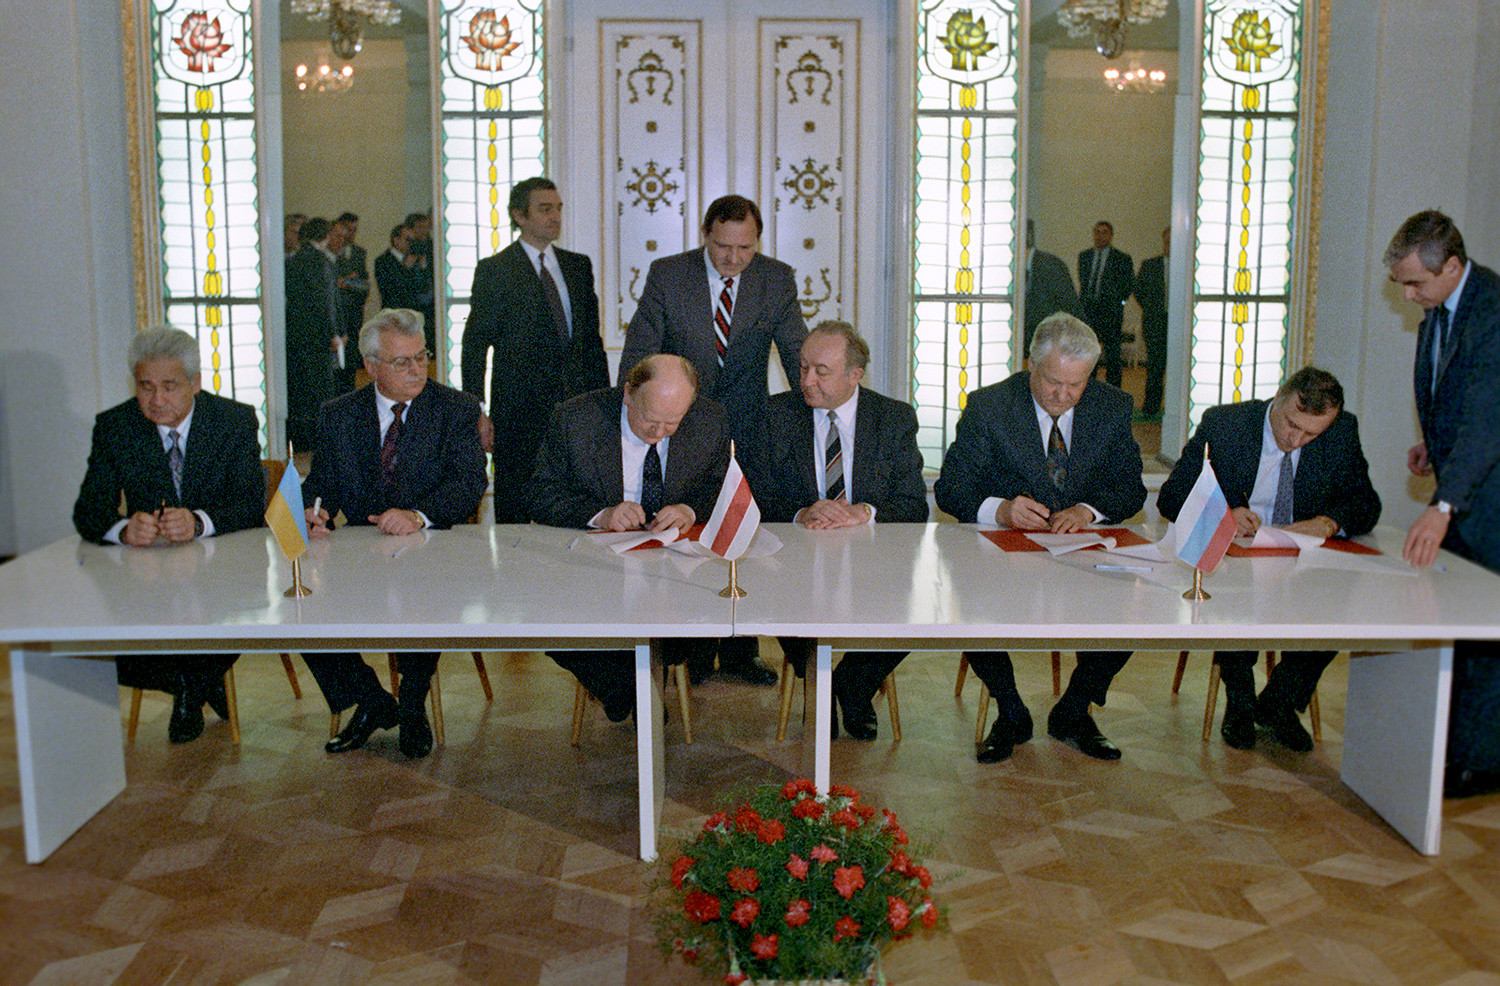 Susret u Minsku

